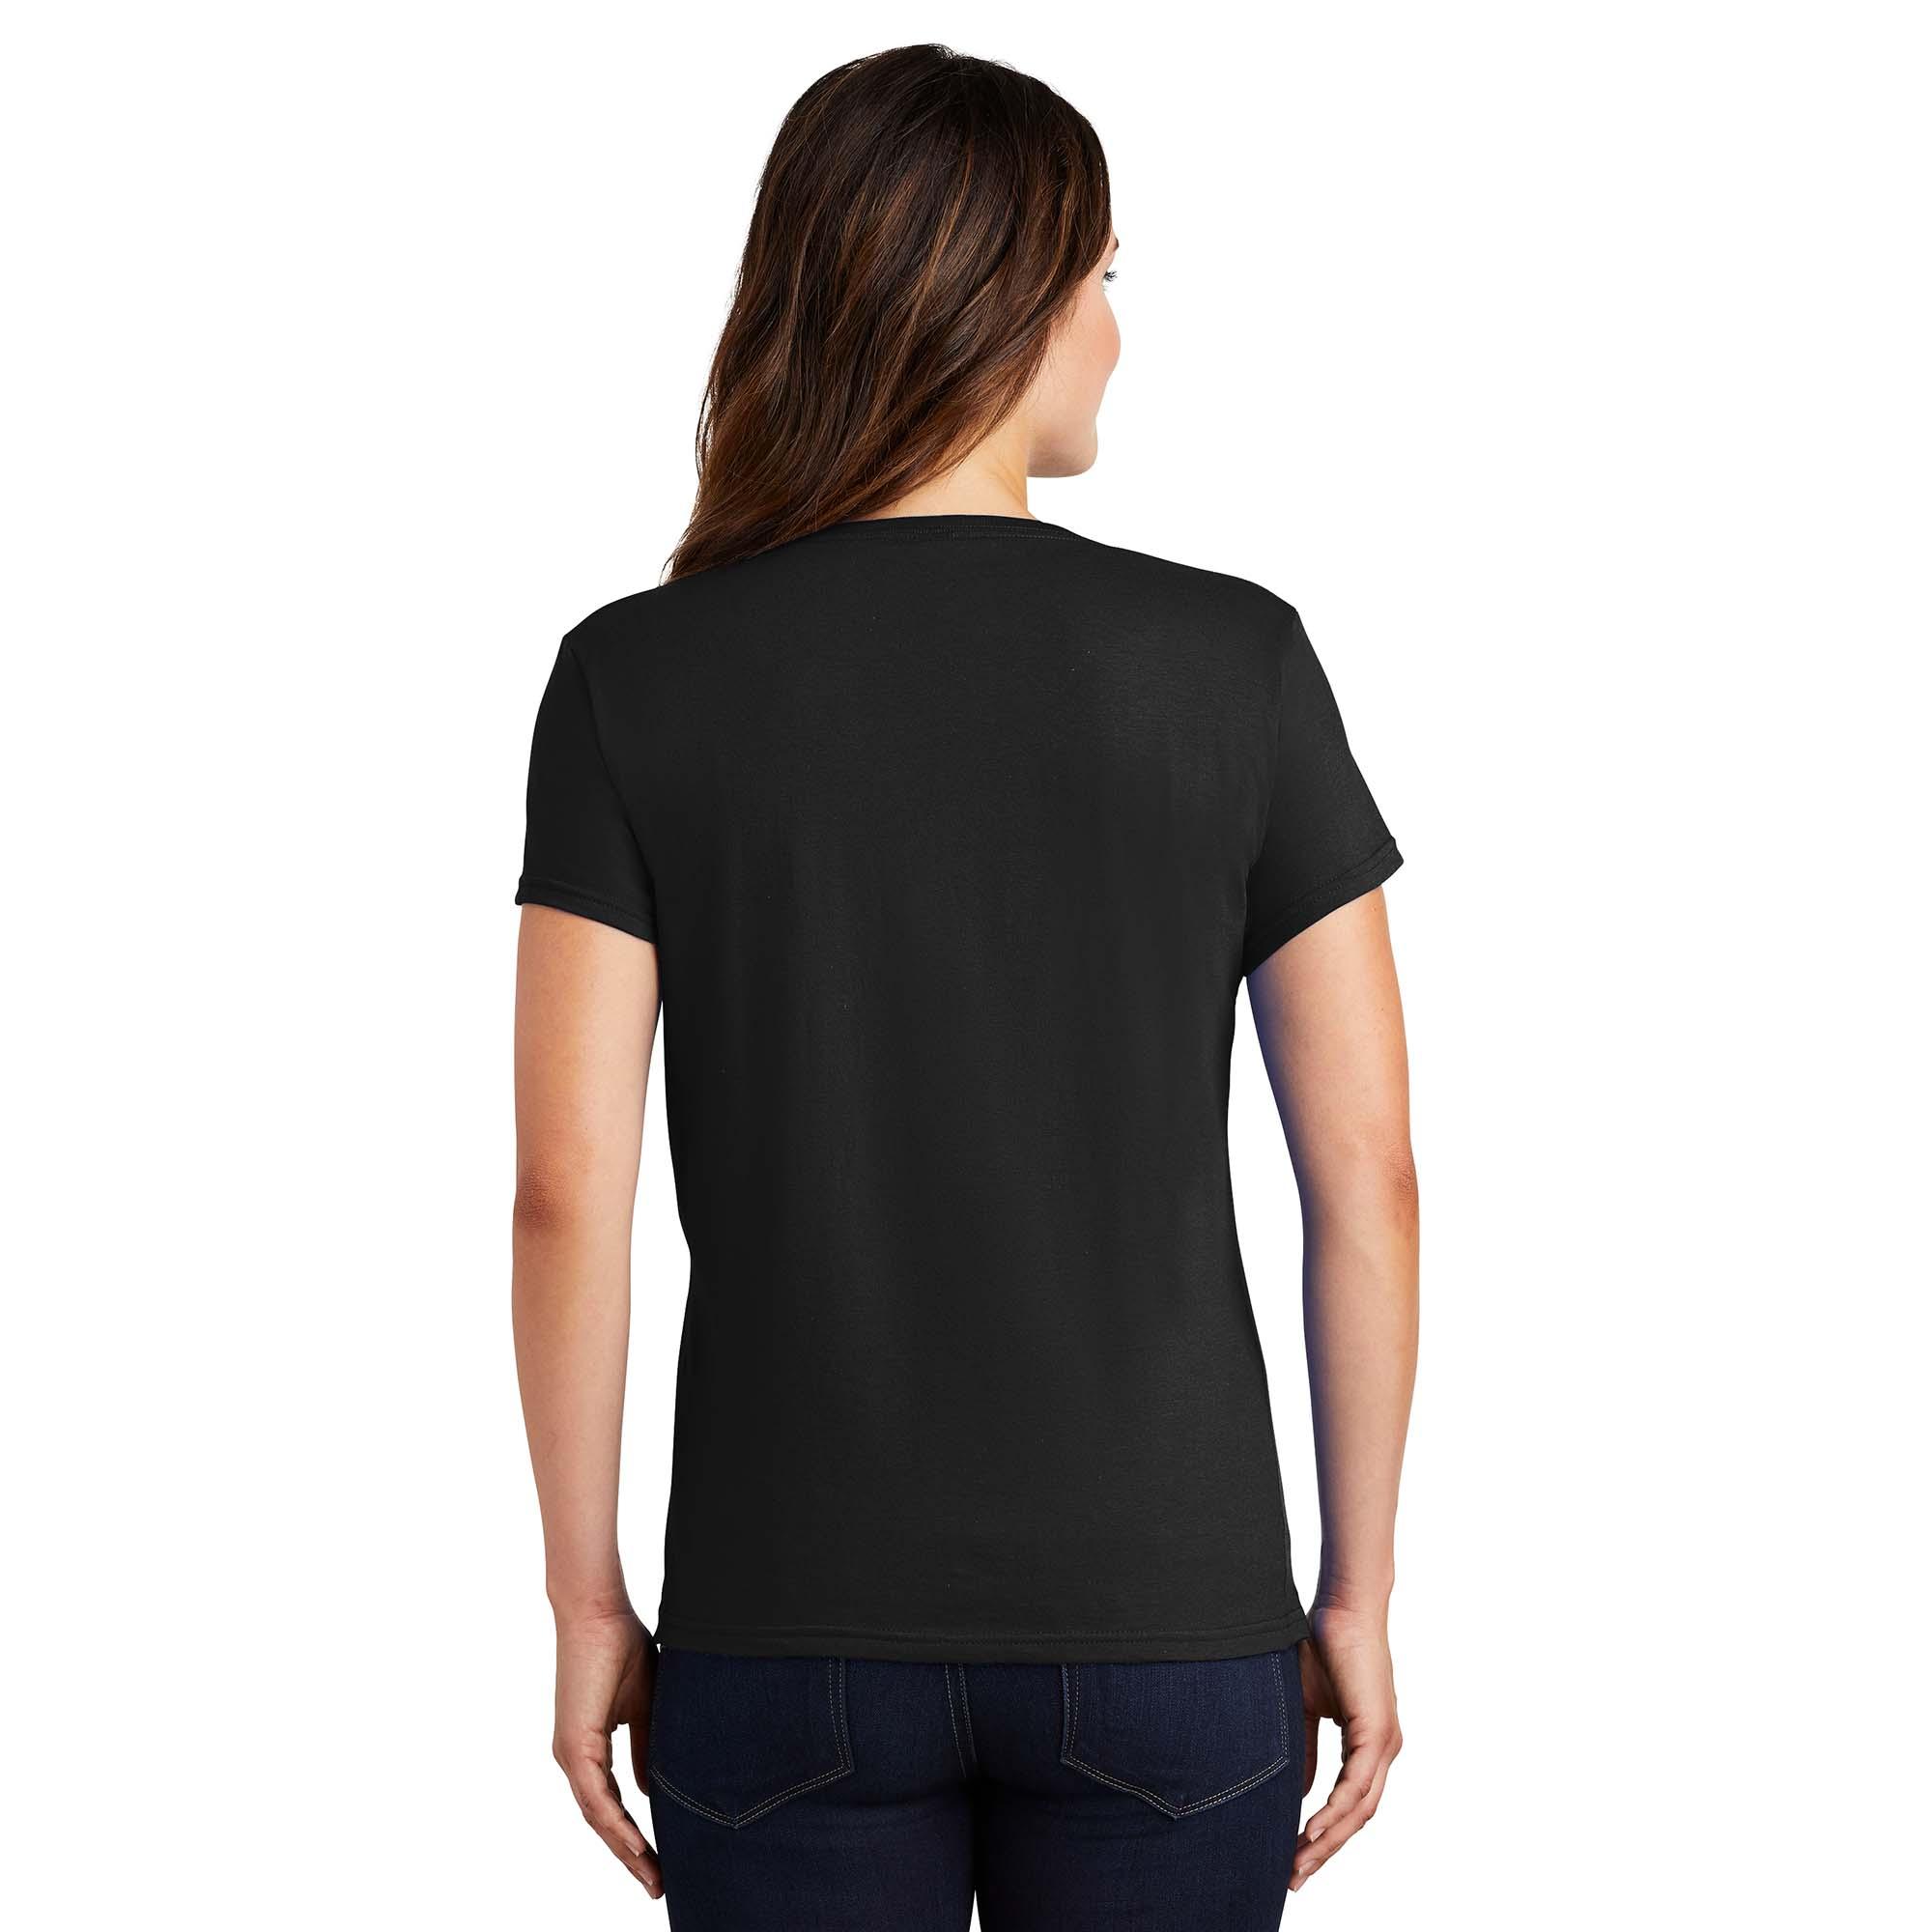 Anvil 880 Ladies 100% Ring Spun Cotton T-Shirt - Black | Full Source